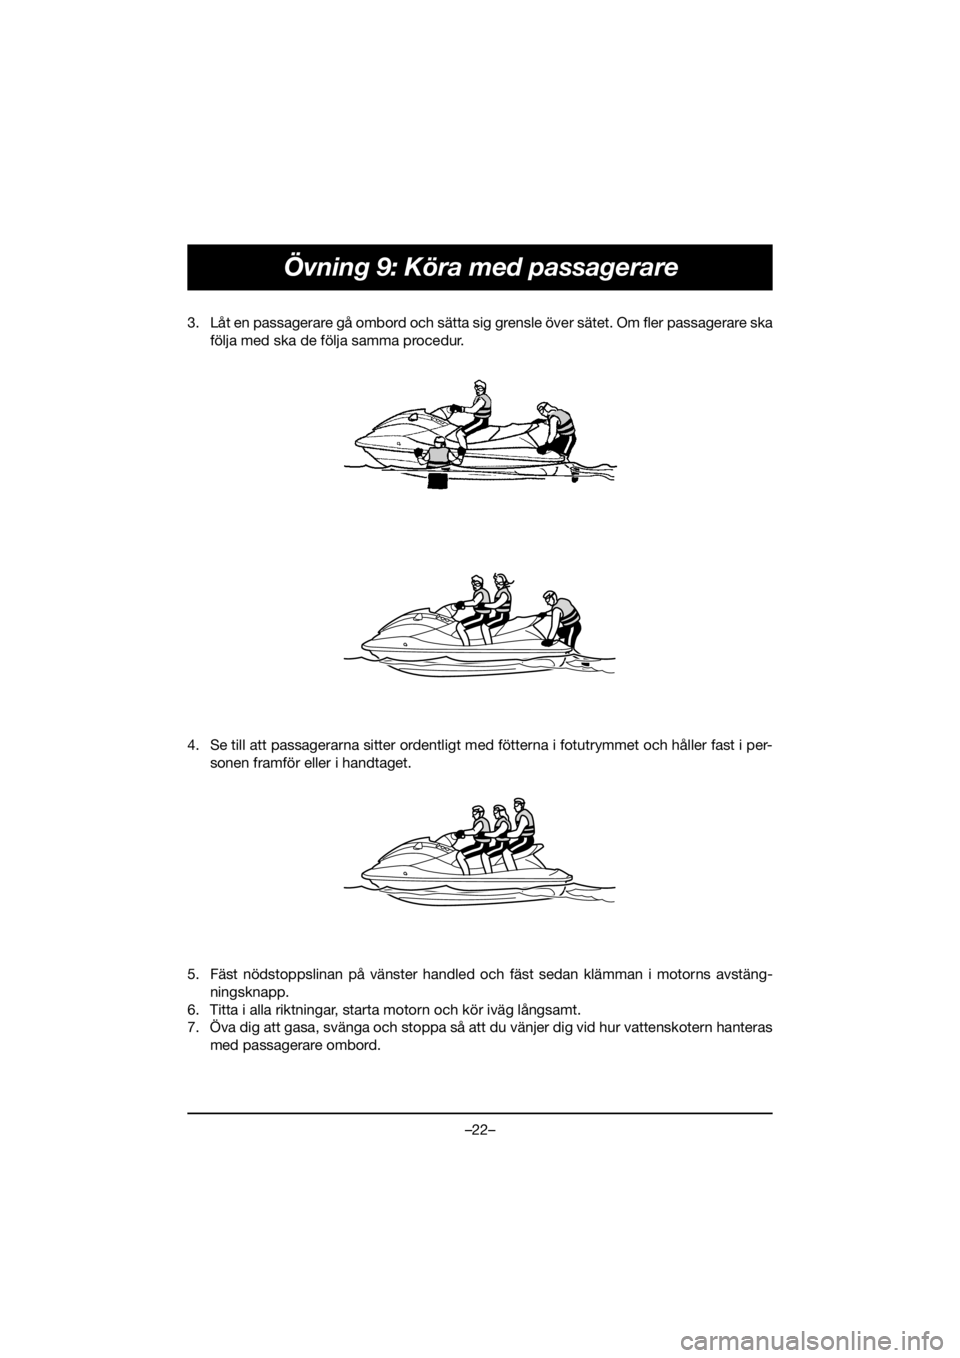 YAMAHA FJR1300 2020  ΟΔΗΓΌΣ ΧΡΉΣΗΣ (in Greek) –22–
Övning 9: Köra med passagerare
3. Låt en passagerare gå ombord och sätta sig grensle över sätet. Om fler passagerare ska
följa med ska de följa samma procedur. 
4. Se till att passag